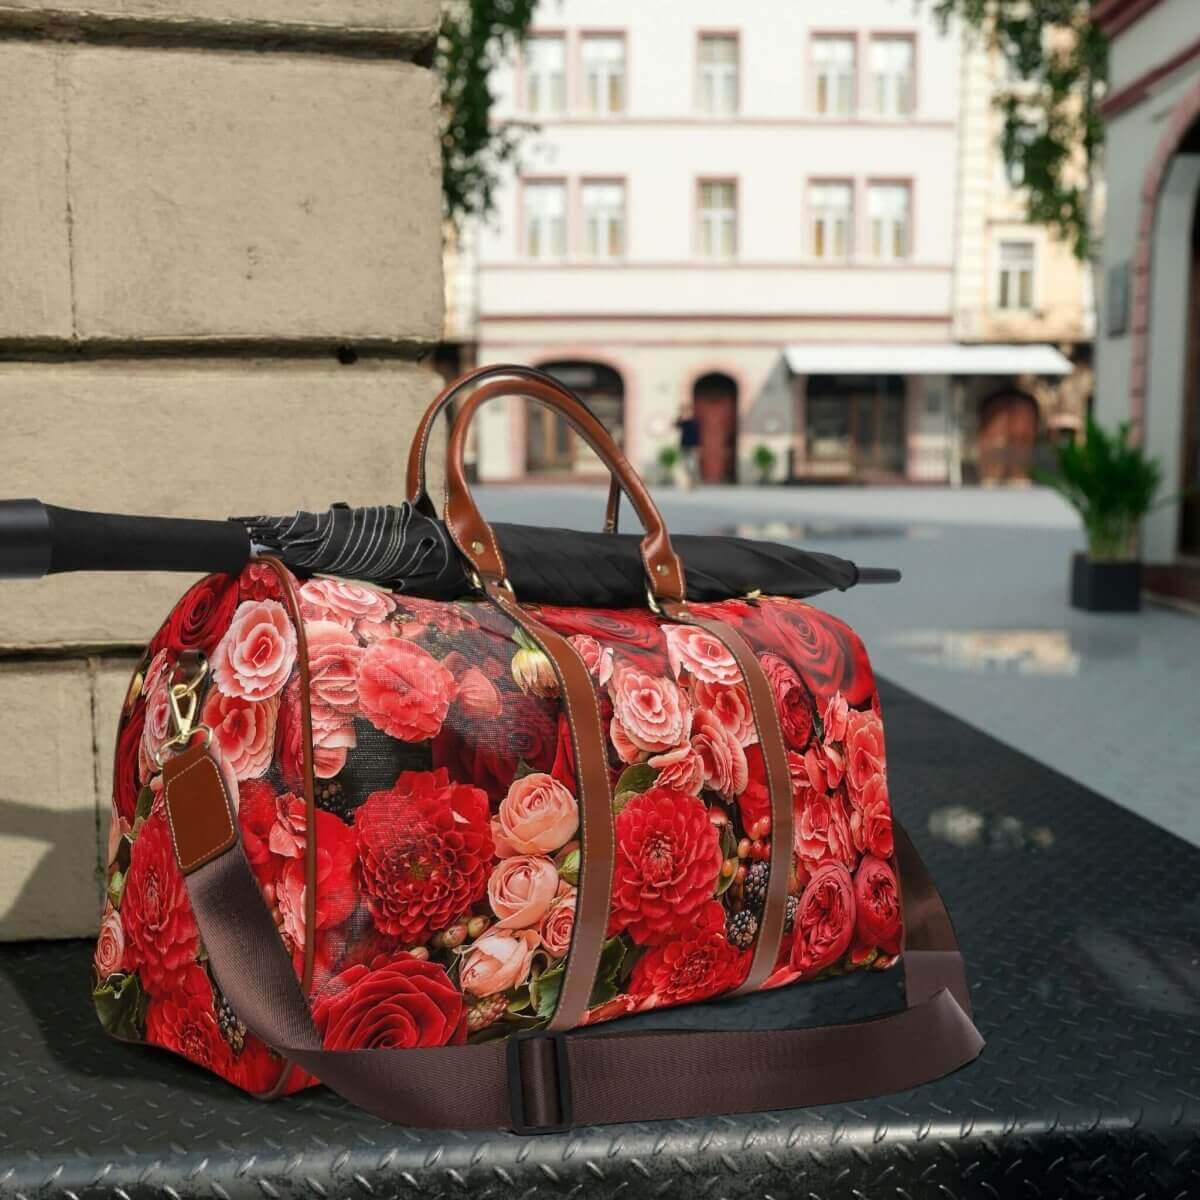 Rose Design - Waterproof Travel Bag - 1